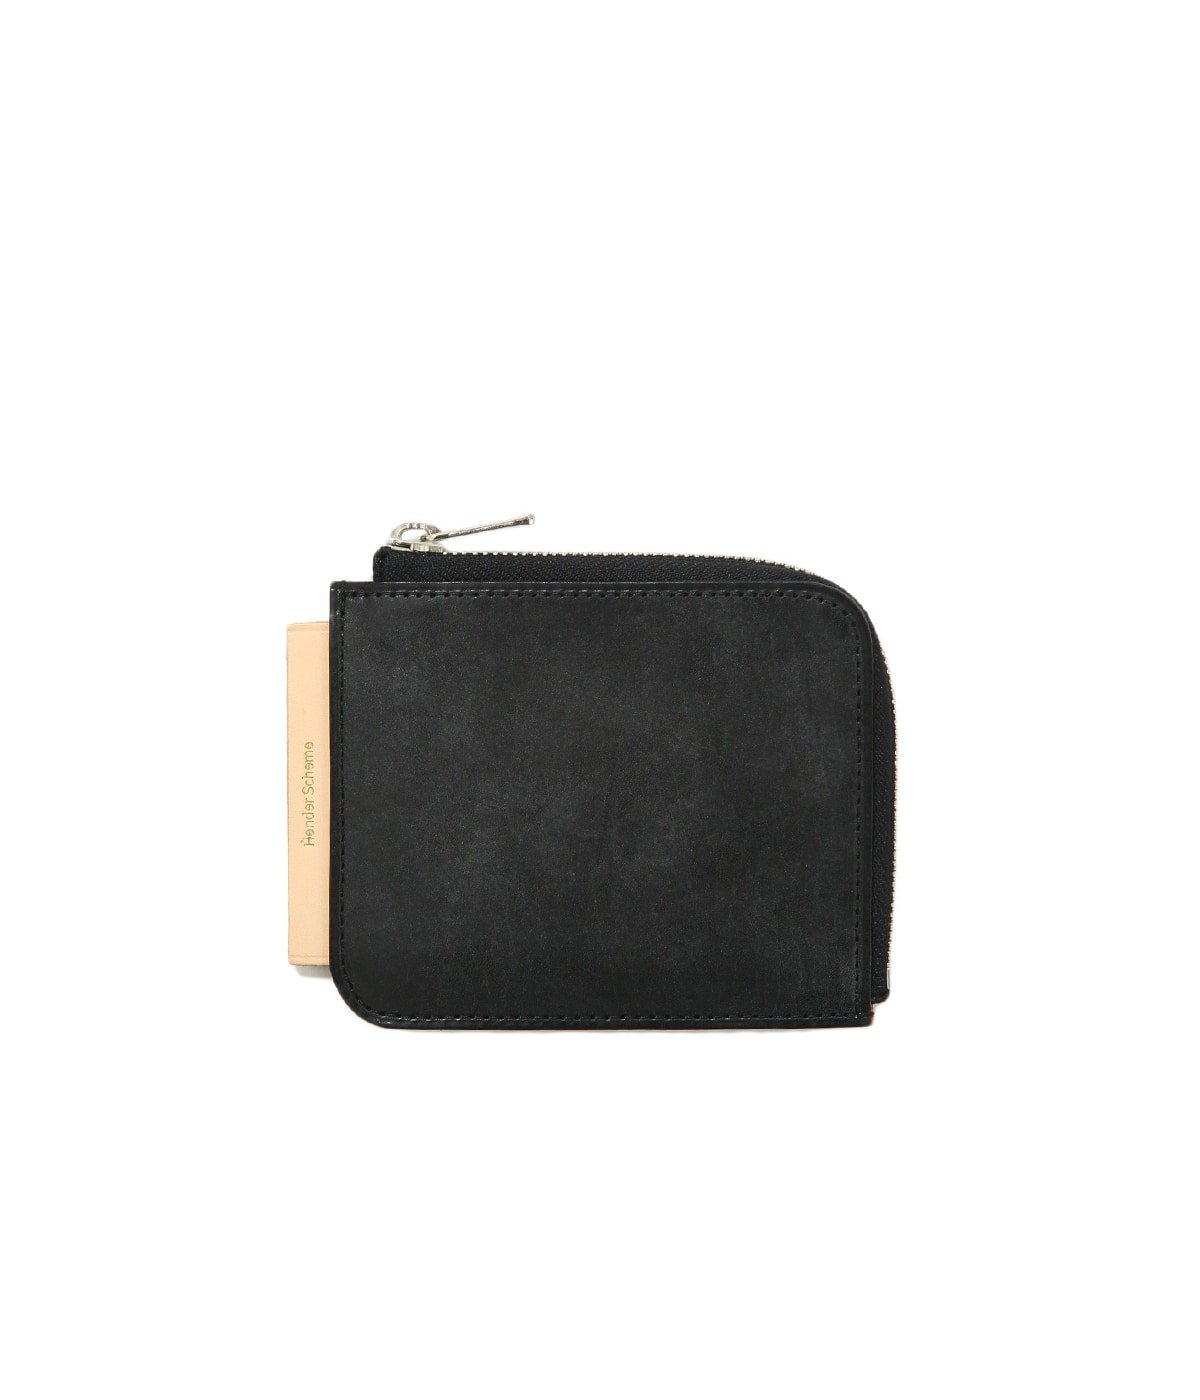 L purse | Hender Scheme(エンダースキーマ) / ファッション雑貨 財布